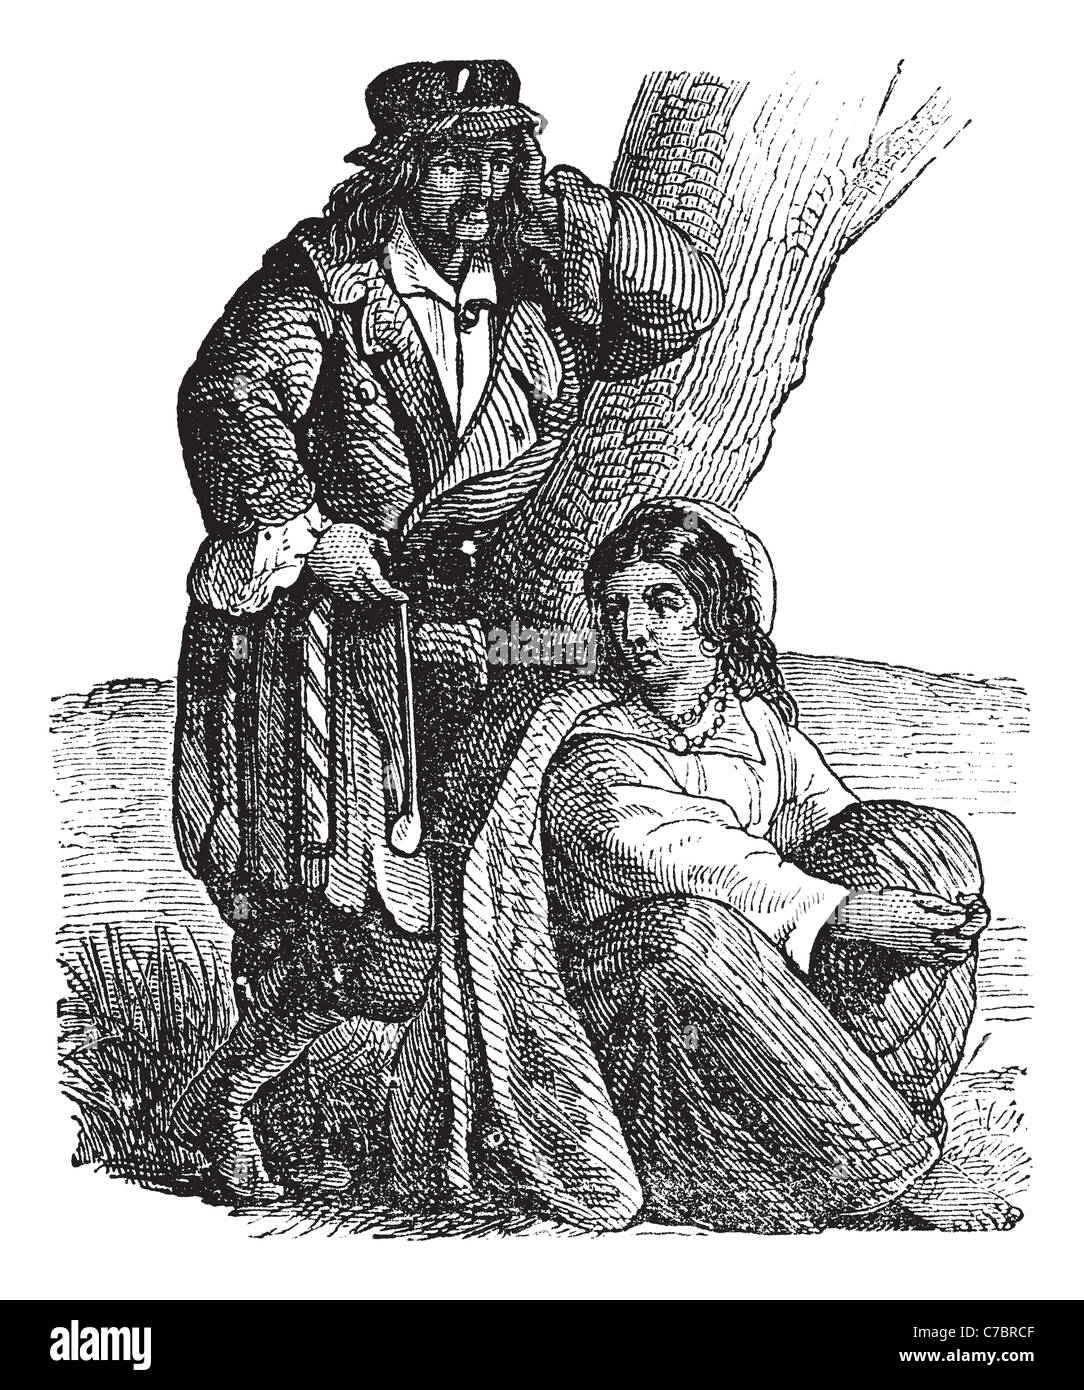 Junger Zigeuner paar von Baum Vintage Gravur. Alte graviert Darstellung der Zigeuner paar, Frau Mann stützte sich auf Baum sitzend Stockfoto